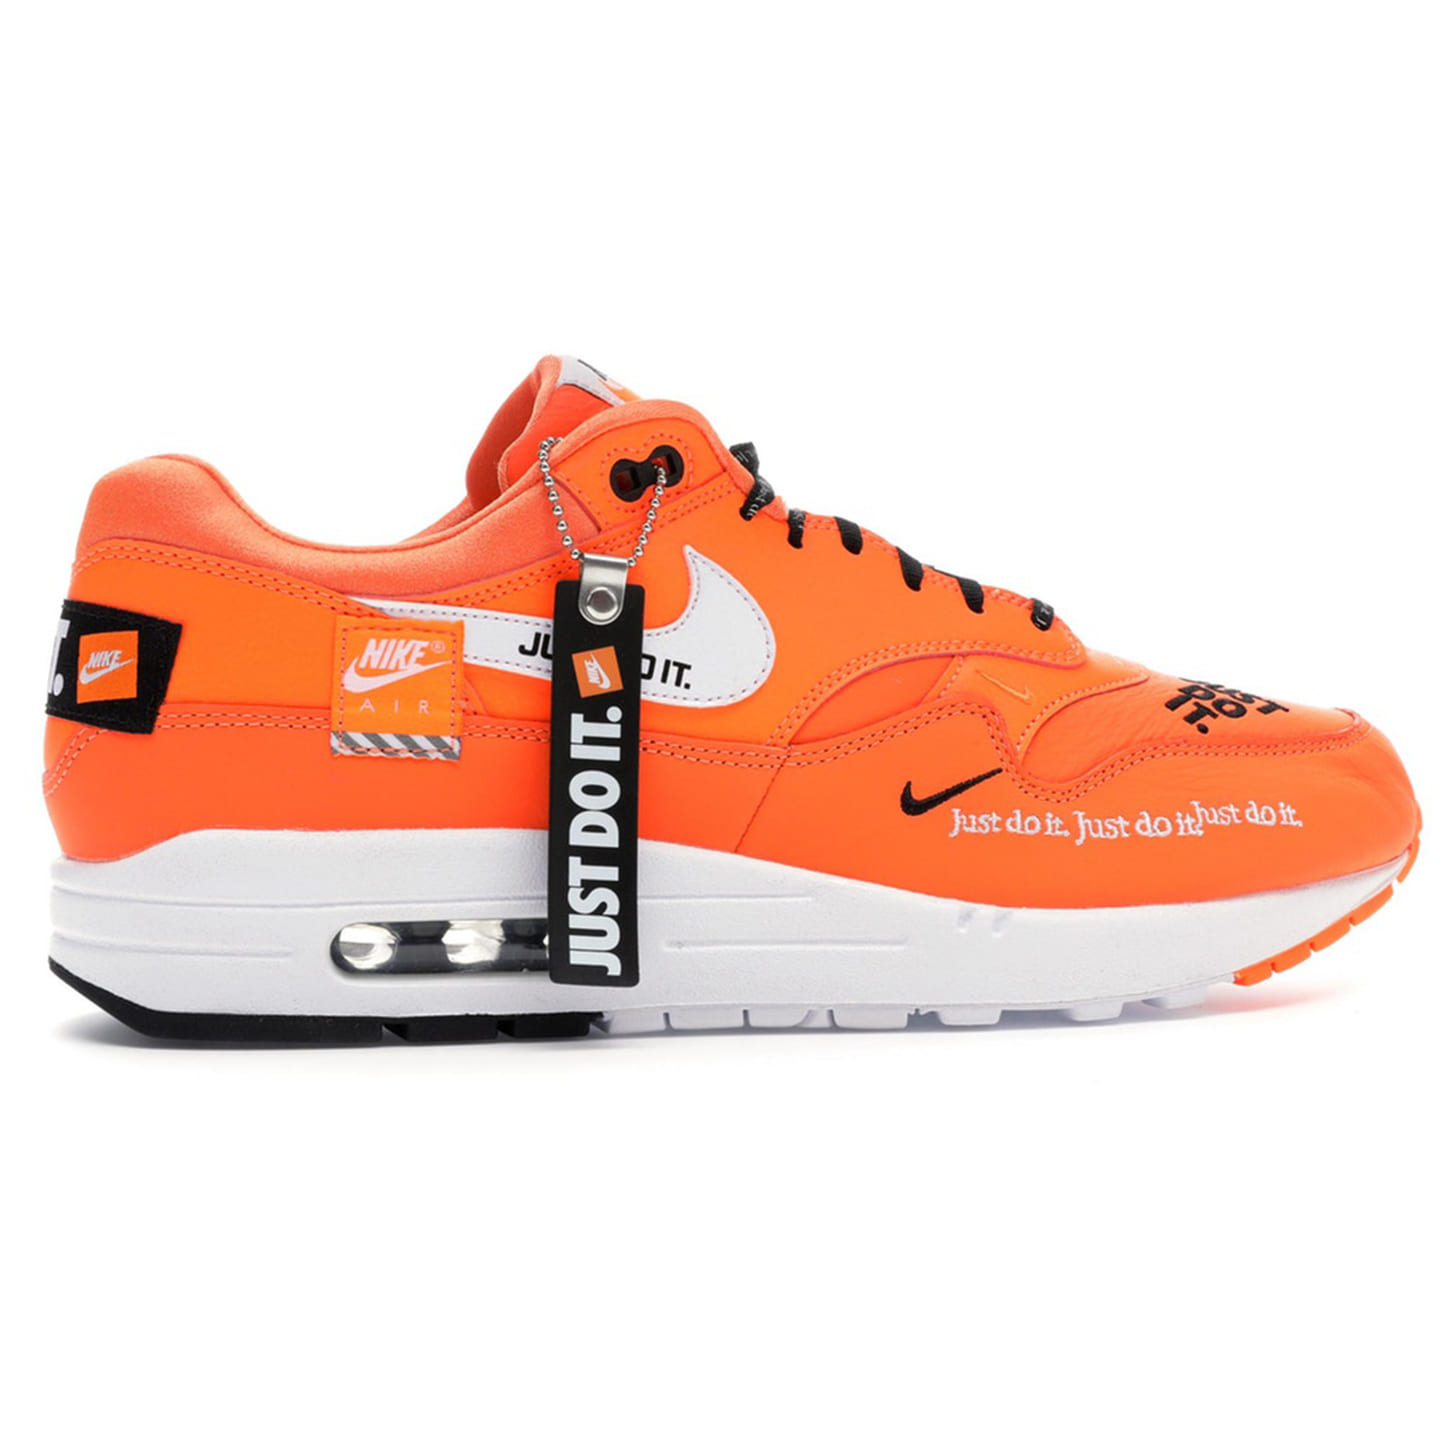 [해외] 나이키 우먼스 에어맥스 1 저스트 두 잇 토털 오렌지 Nike W Air Max 1 Lux Just Do it Total Orange 917691-800